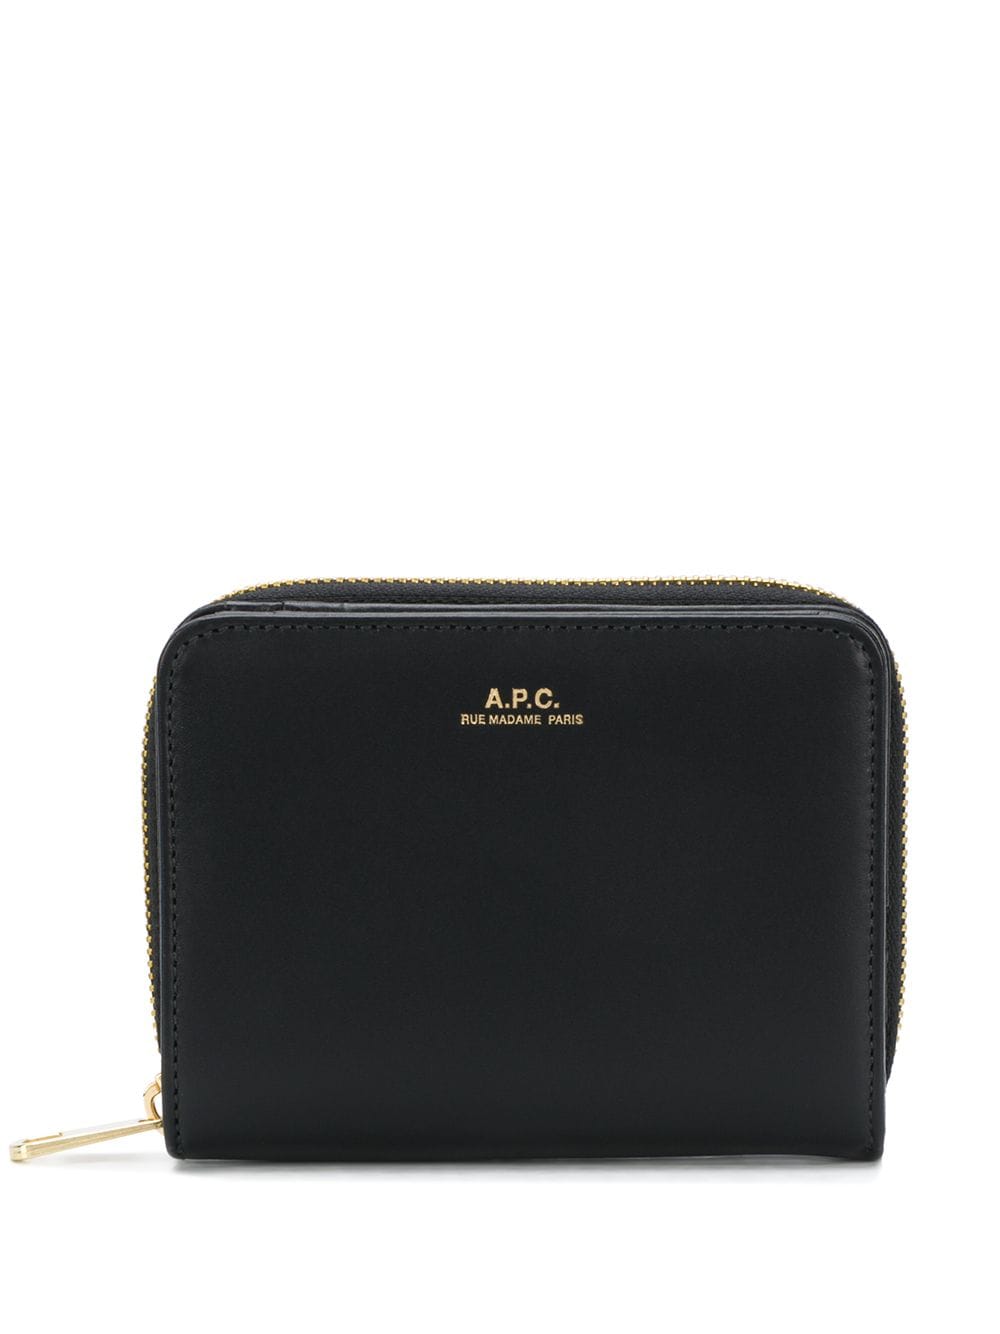 A.P.C. logo purse